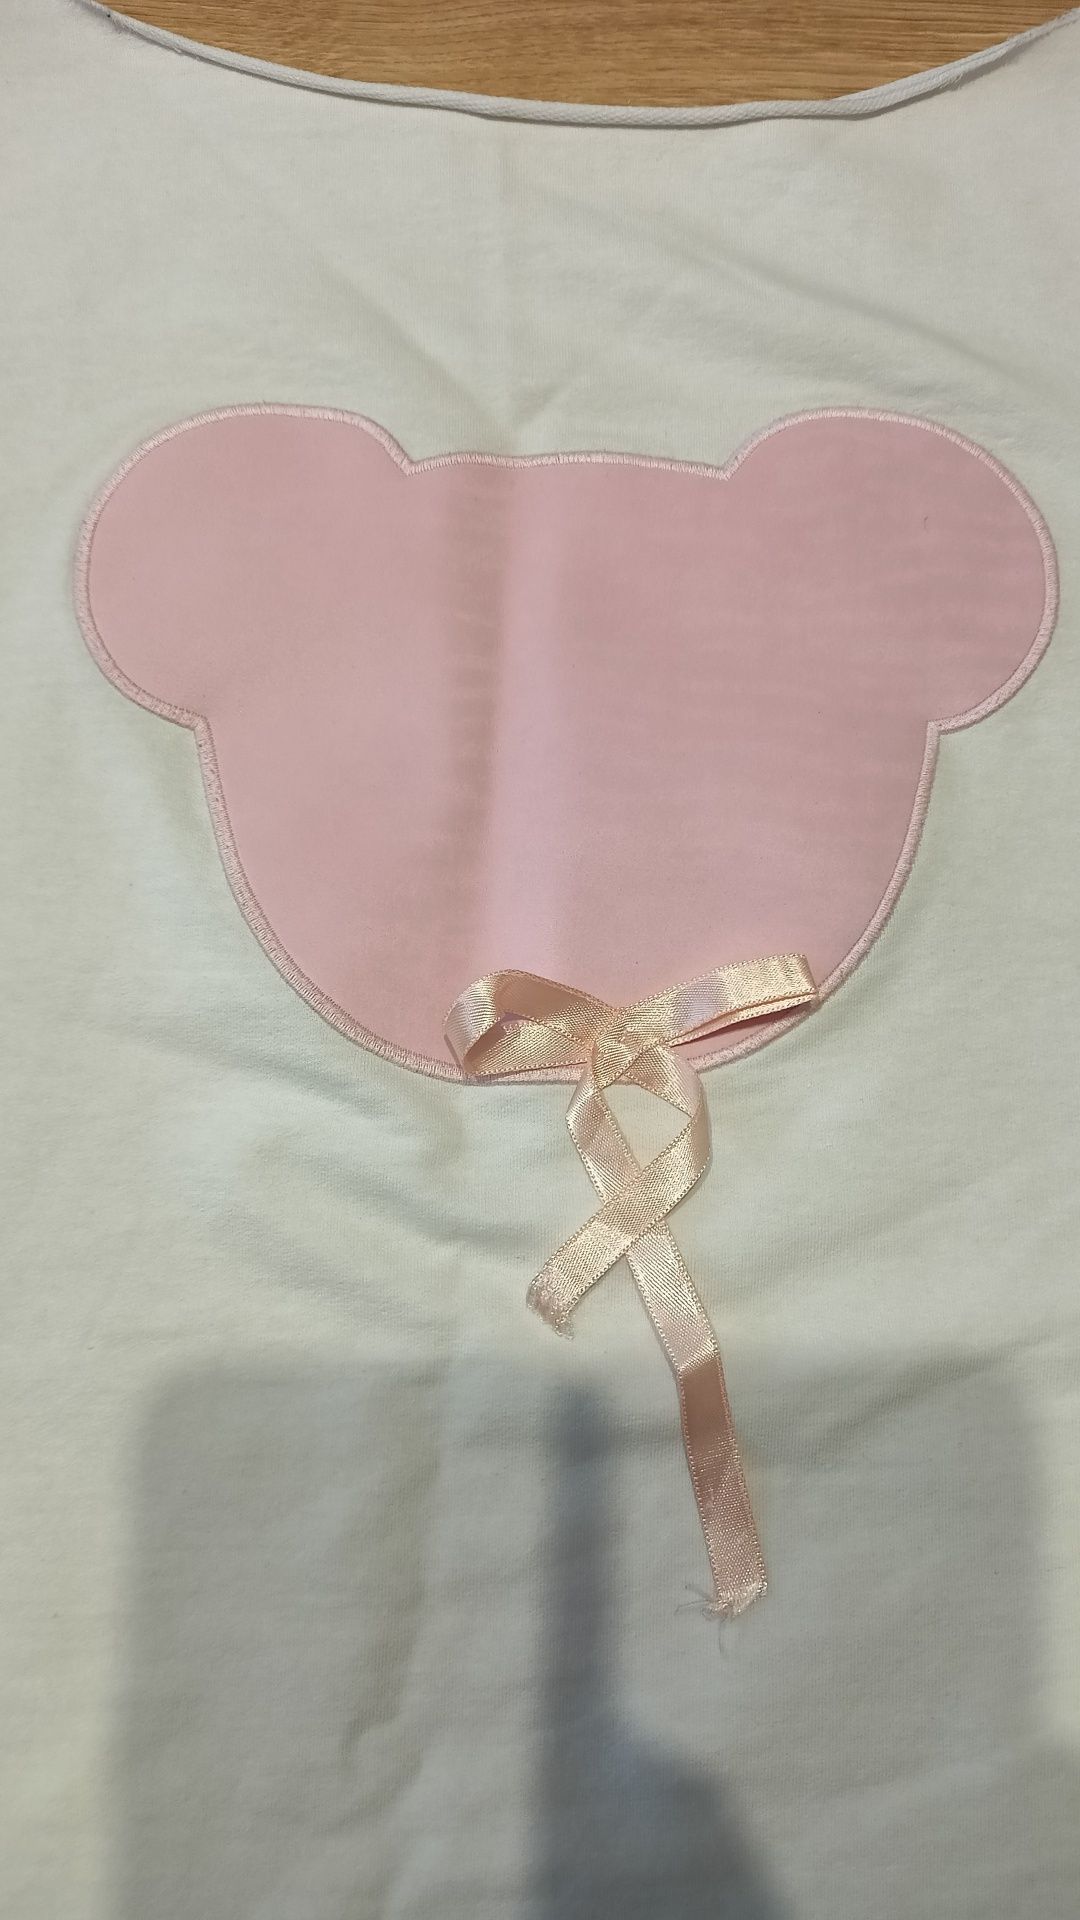 Bluzka z rękawem 3/4 biała z różowym logo myszki Miki rozmiar M